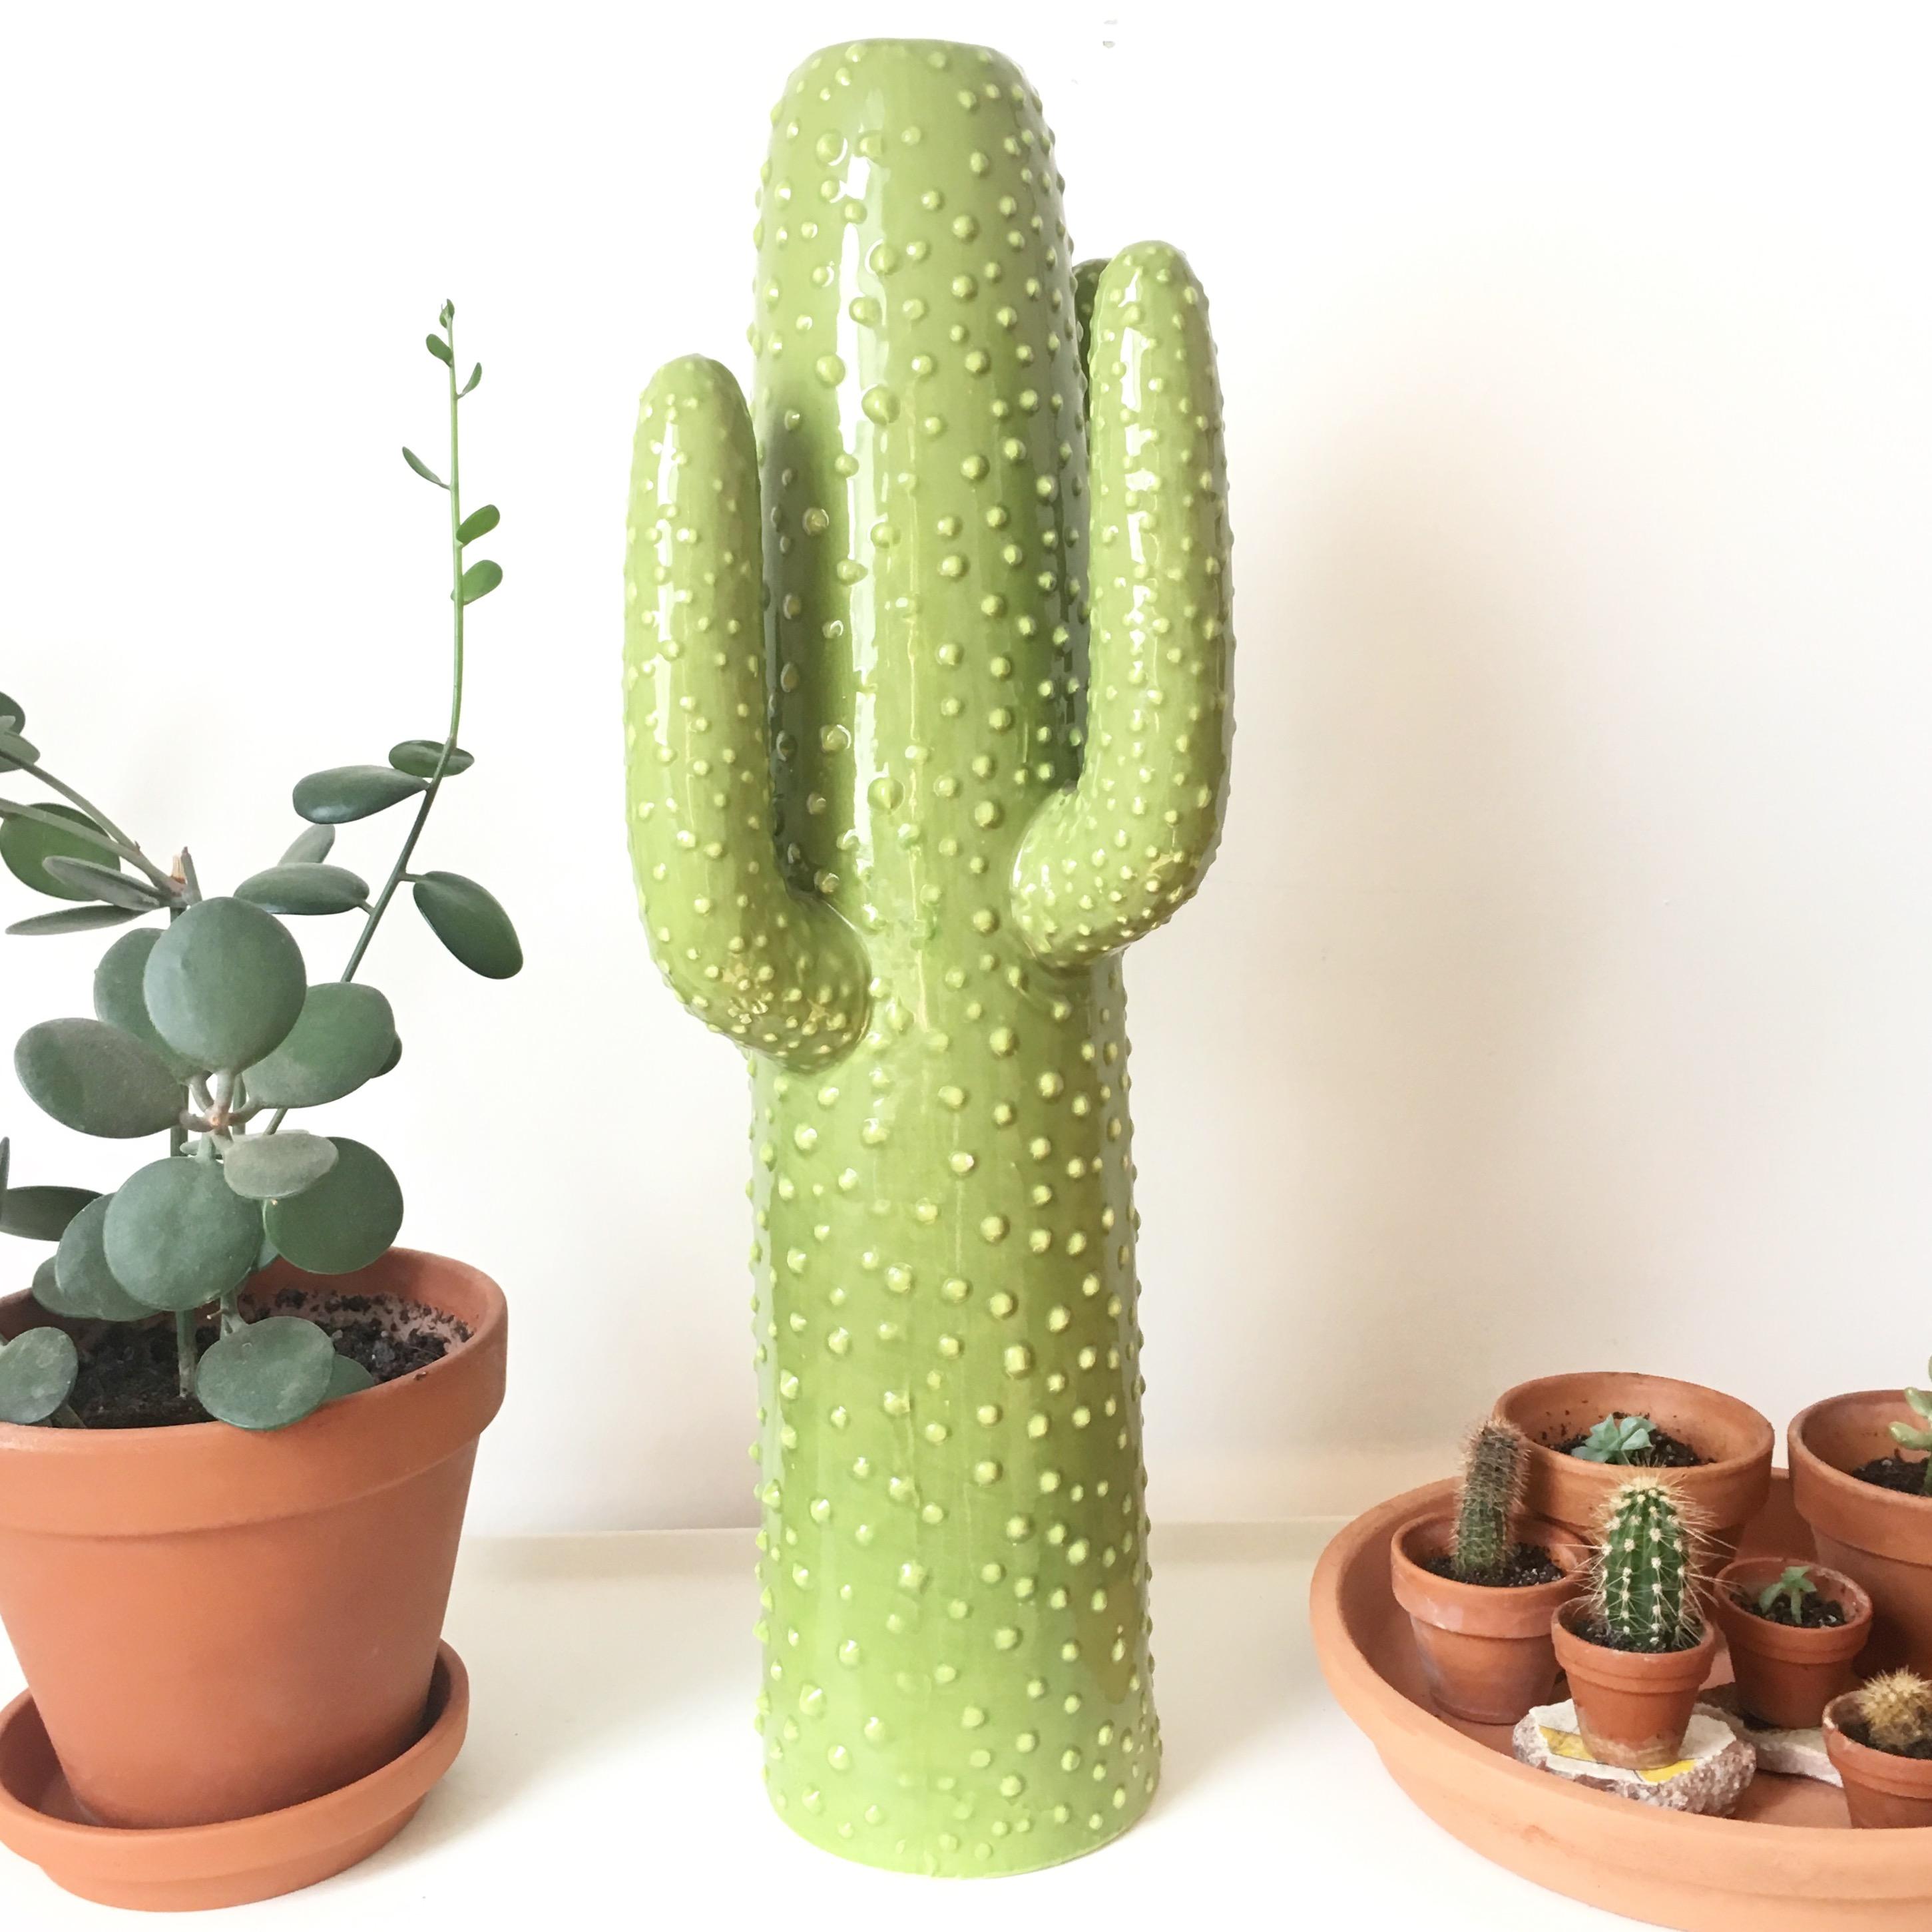 Mein immergrüner Kaktus #urbanjungle #kaktus #vase #deko #plants